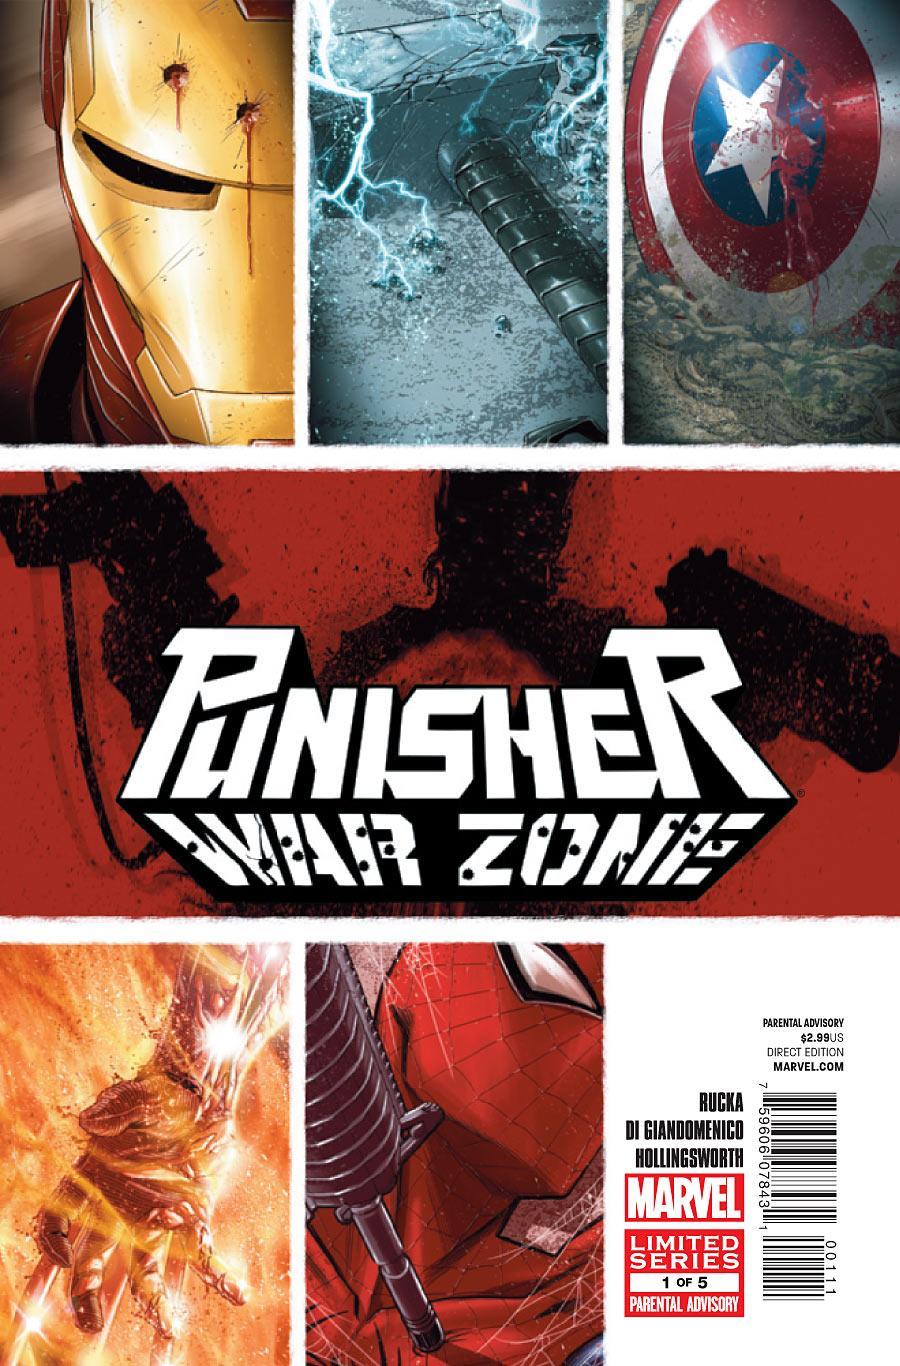 Punisher: War Zone Vol. 3 #1